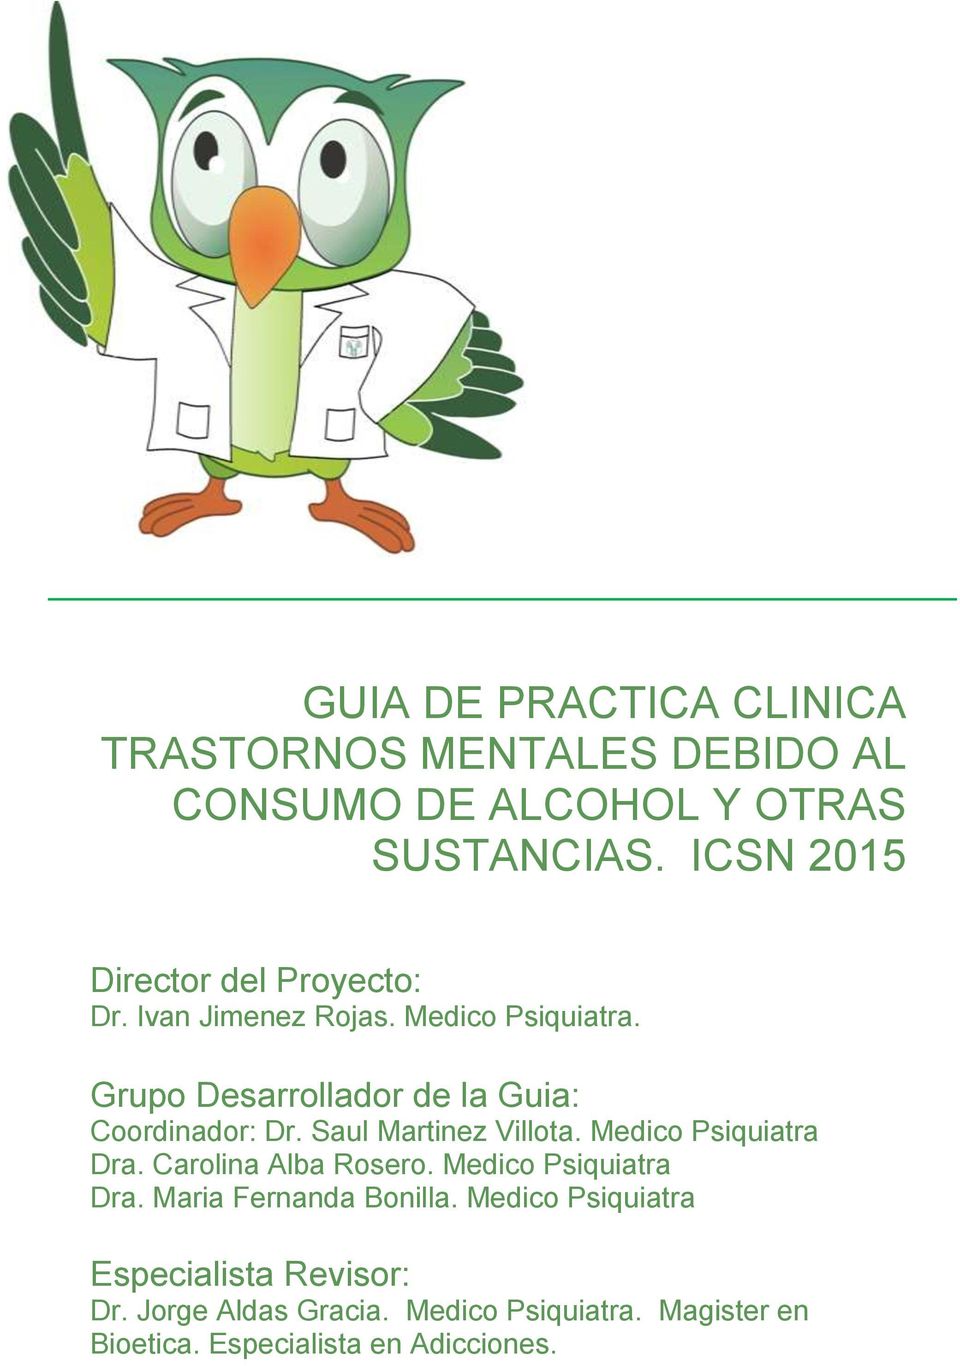 Grupo Desarrollador de la Guia: Coordinador: Dr. Saul Martinez Villota. Medico Psiquiatra Dra. Carolina Alba Rosero.